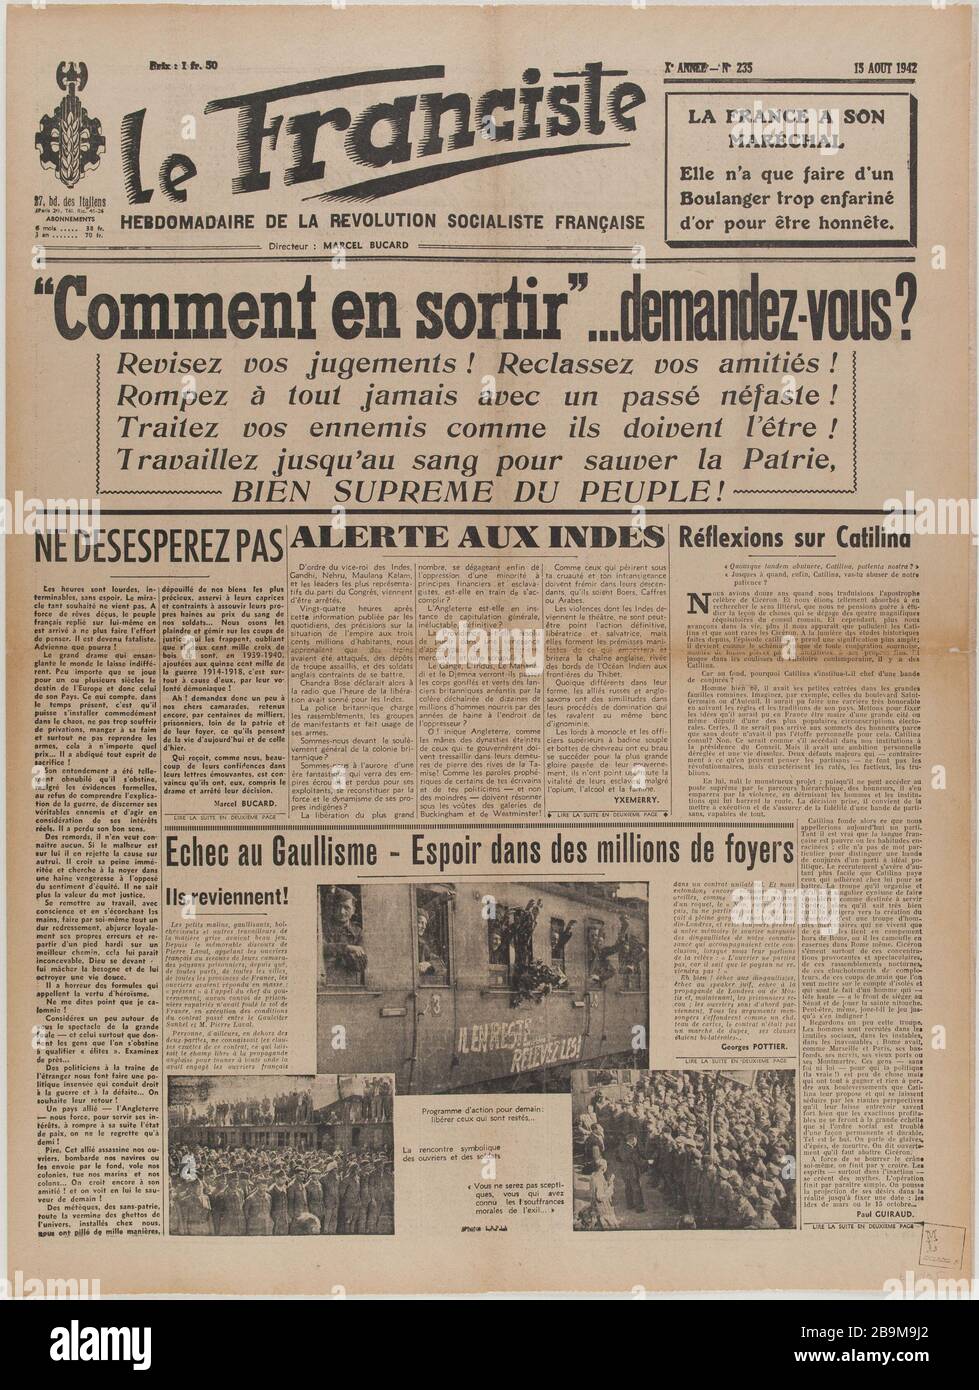 Newspaper 'The Franciste' of August 15, 1942 Journal 'Le Franciste' du 15 août 1942. Papier imprimé, 1942. Musée du Général Leclerc de Hauteclocque et de la Libération de Paris, musée Jean Moulin. Stock Photo